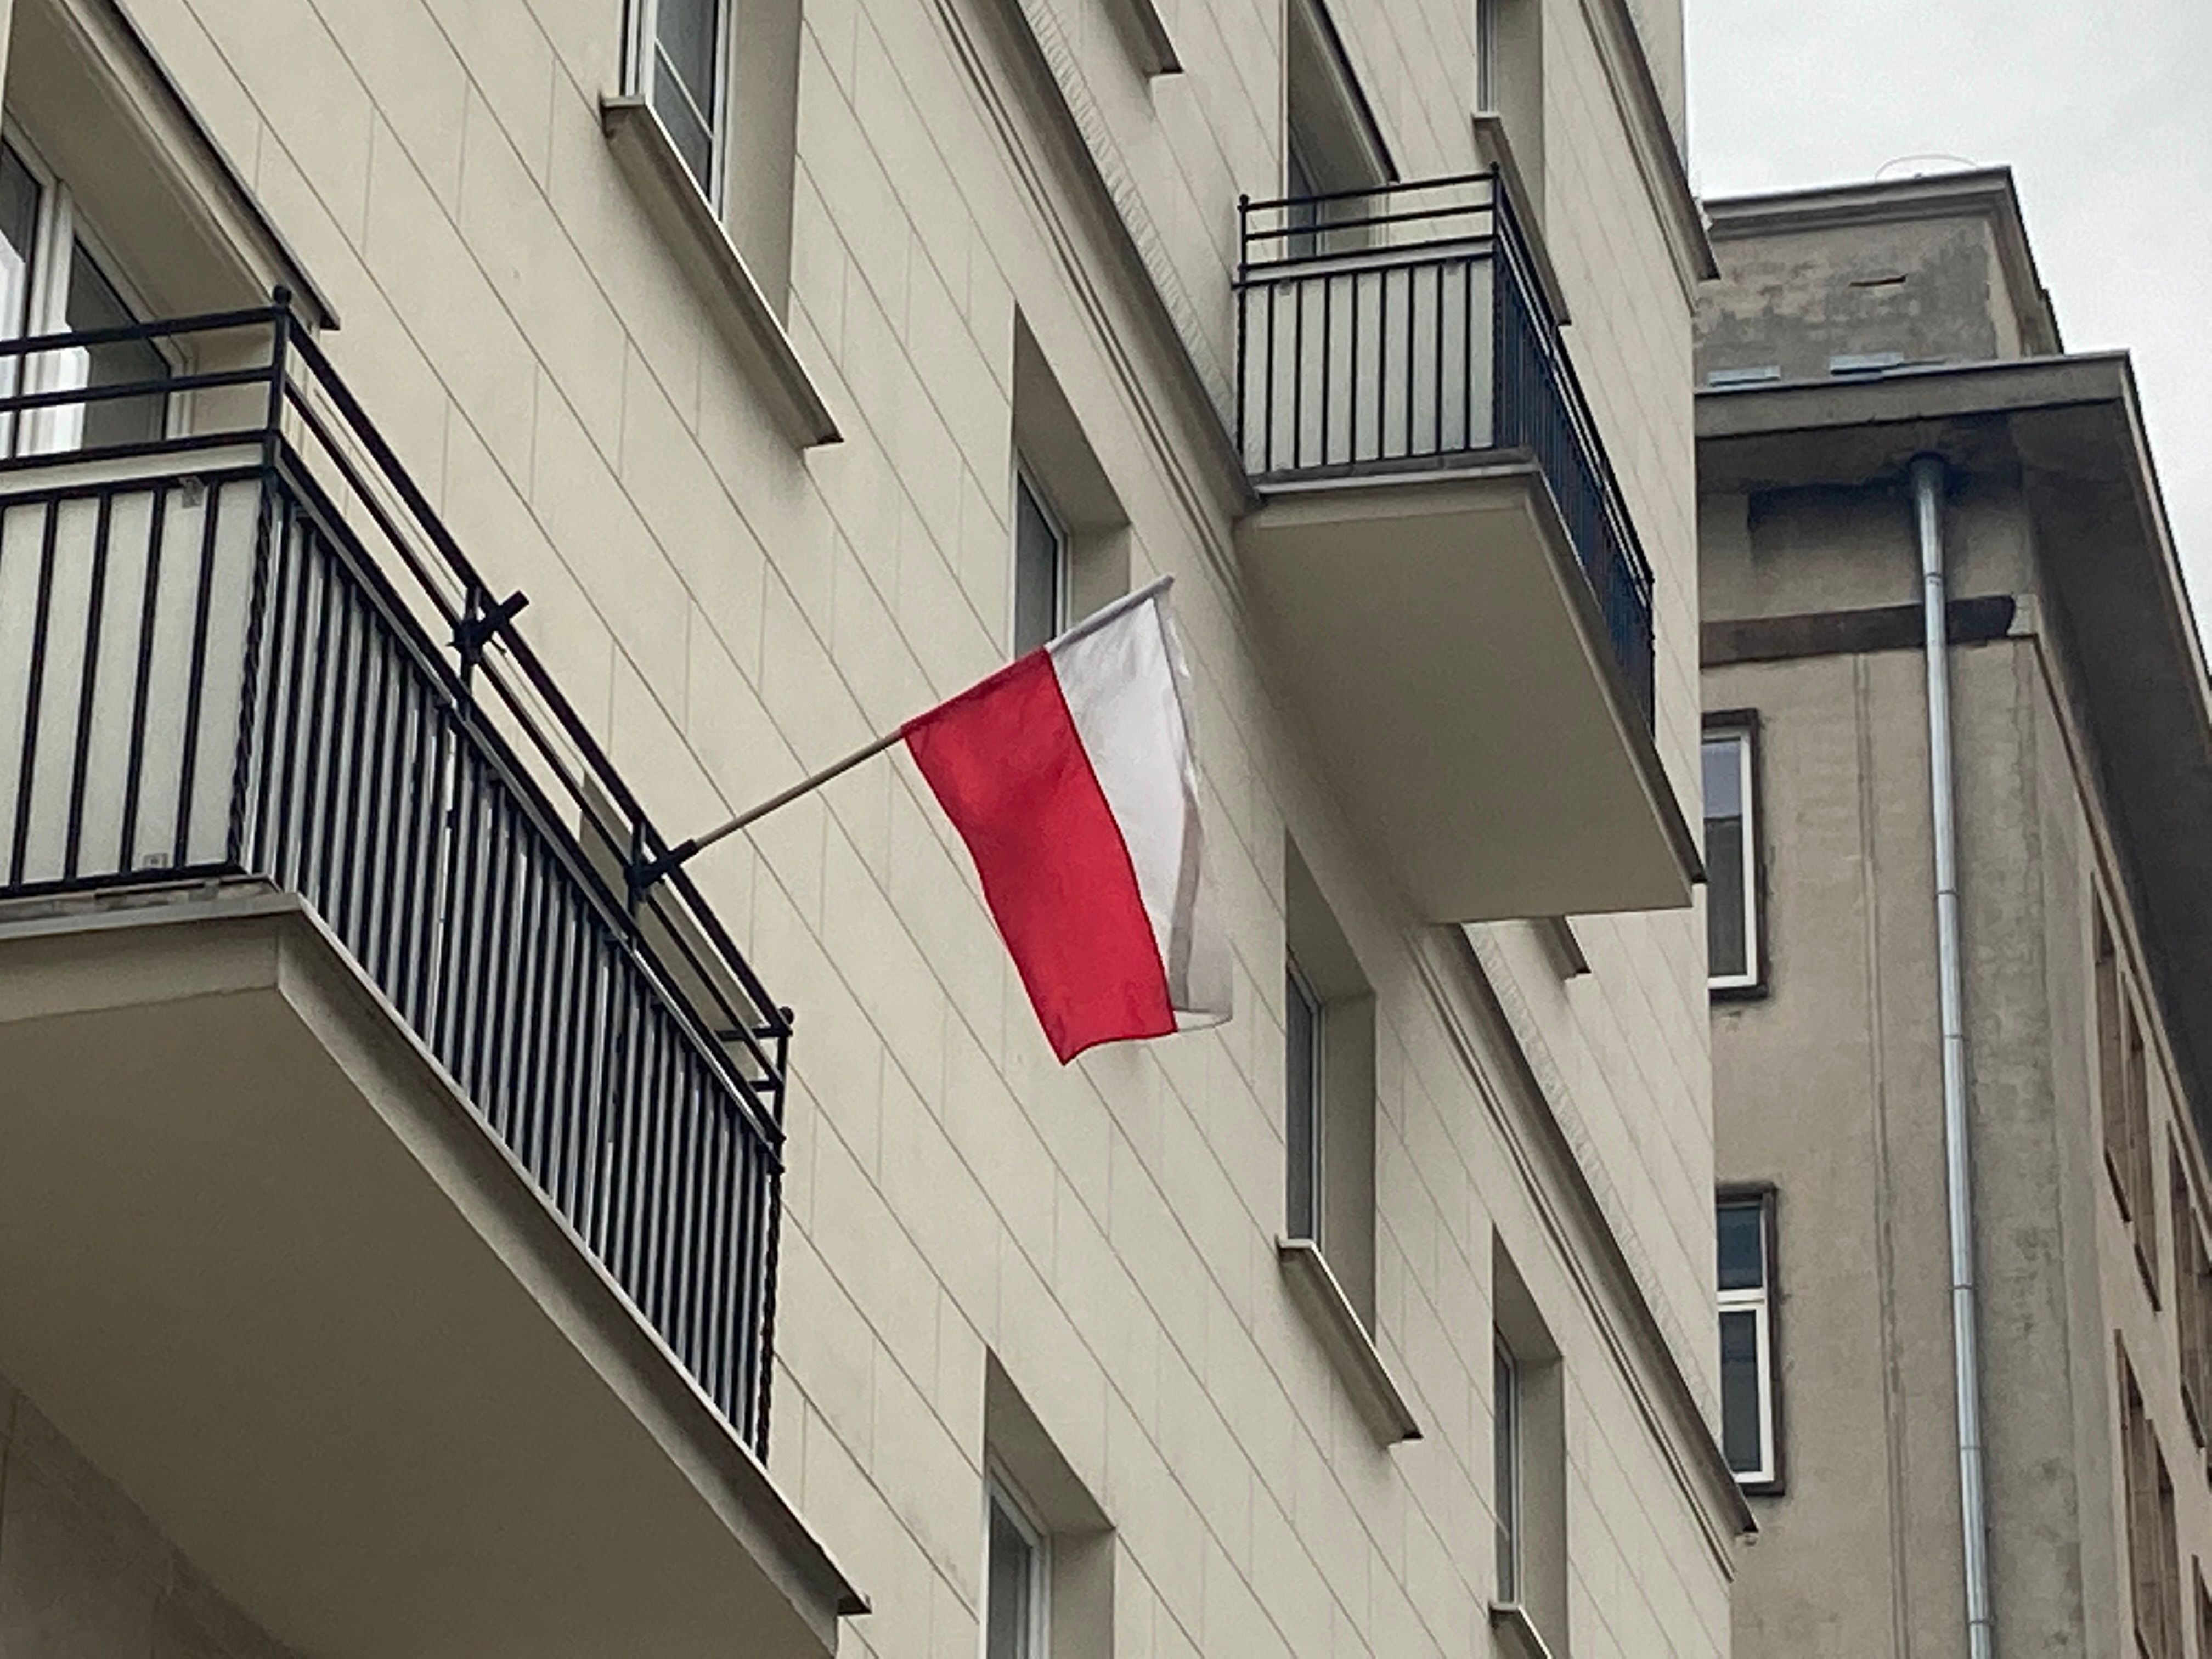 flaga na balkonie-polska flaga-balkon-flaga-iberion